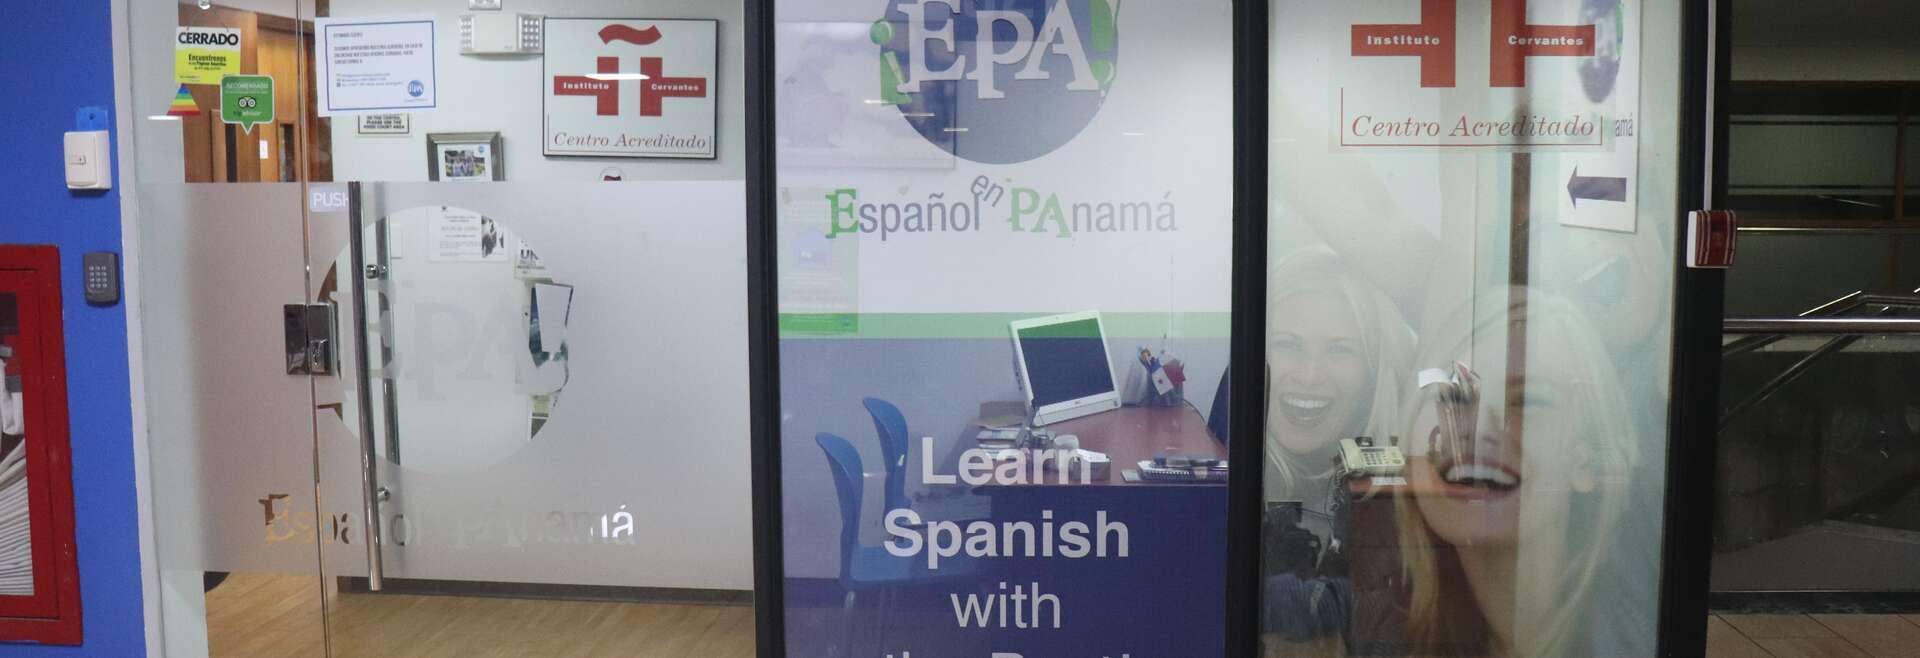 Séjour linguistique Panama, Panama City - Epaespañol en Panamá - École 